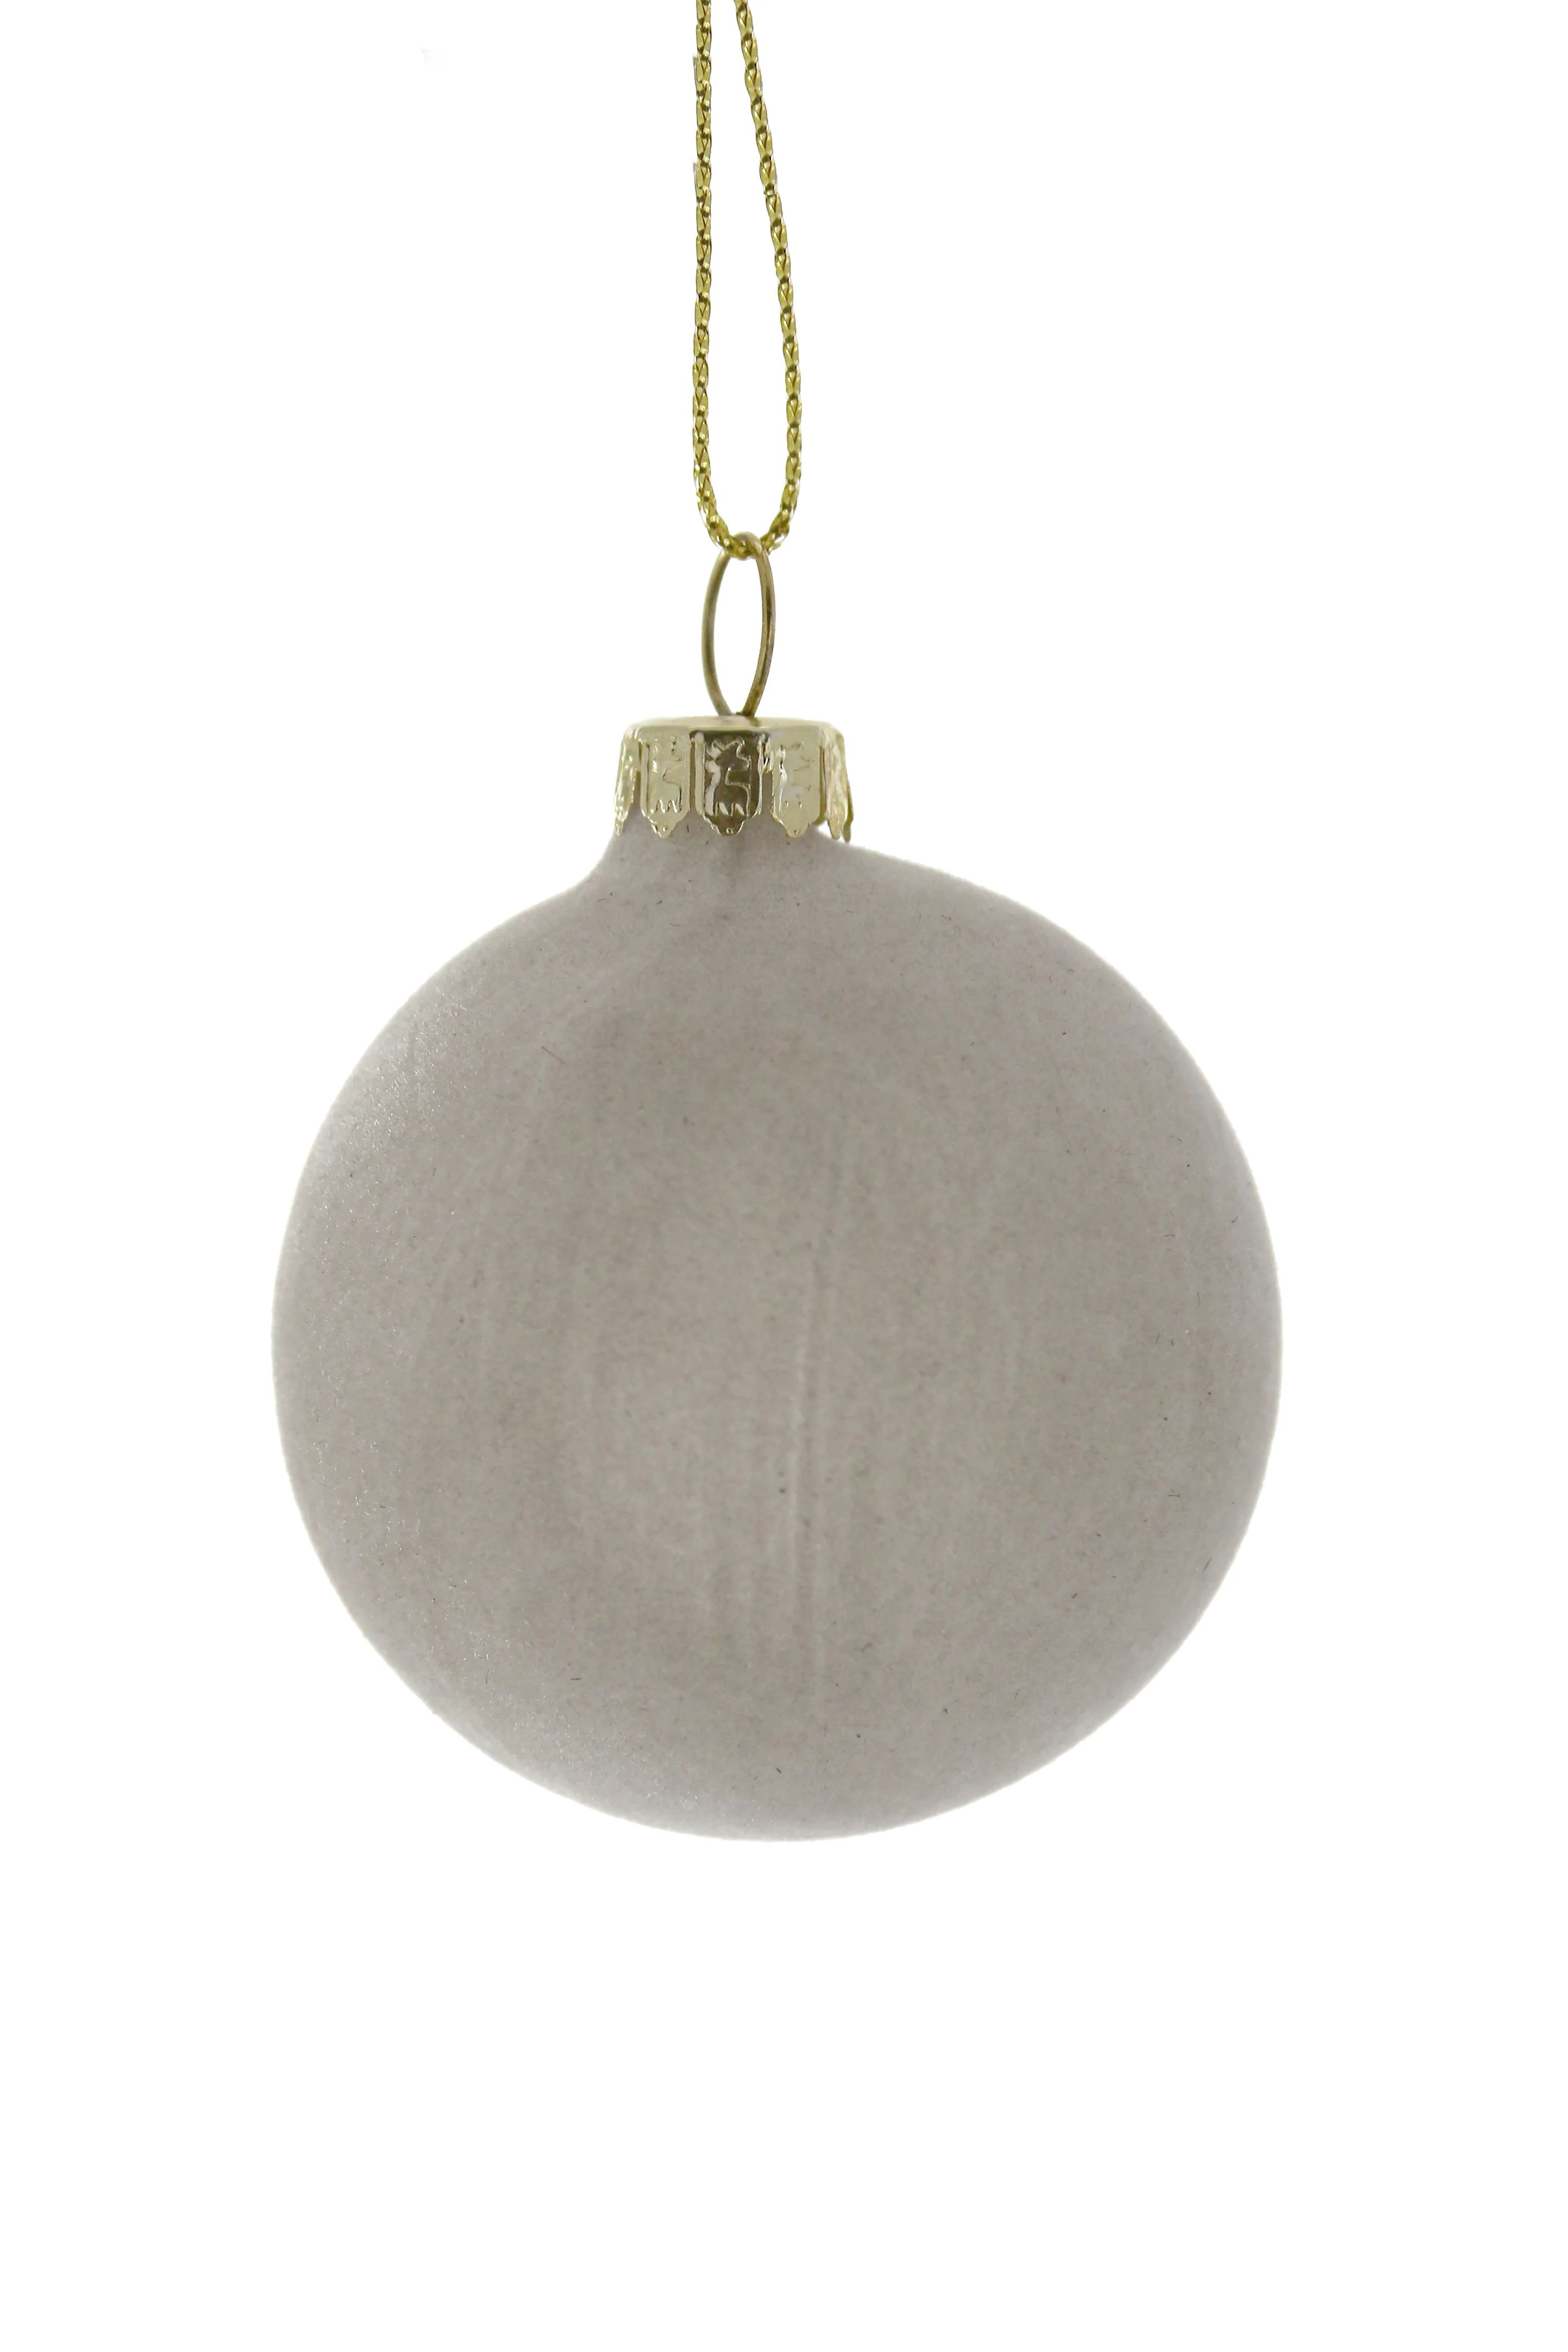 Velvet Ball Holiday Ornament in Various Colors | Burke Decor